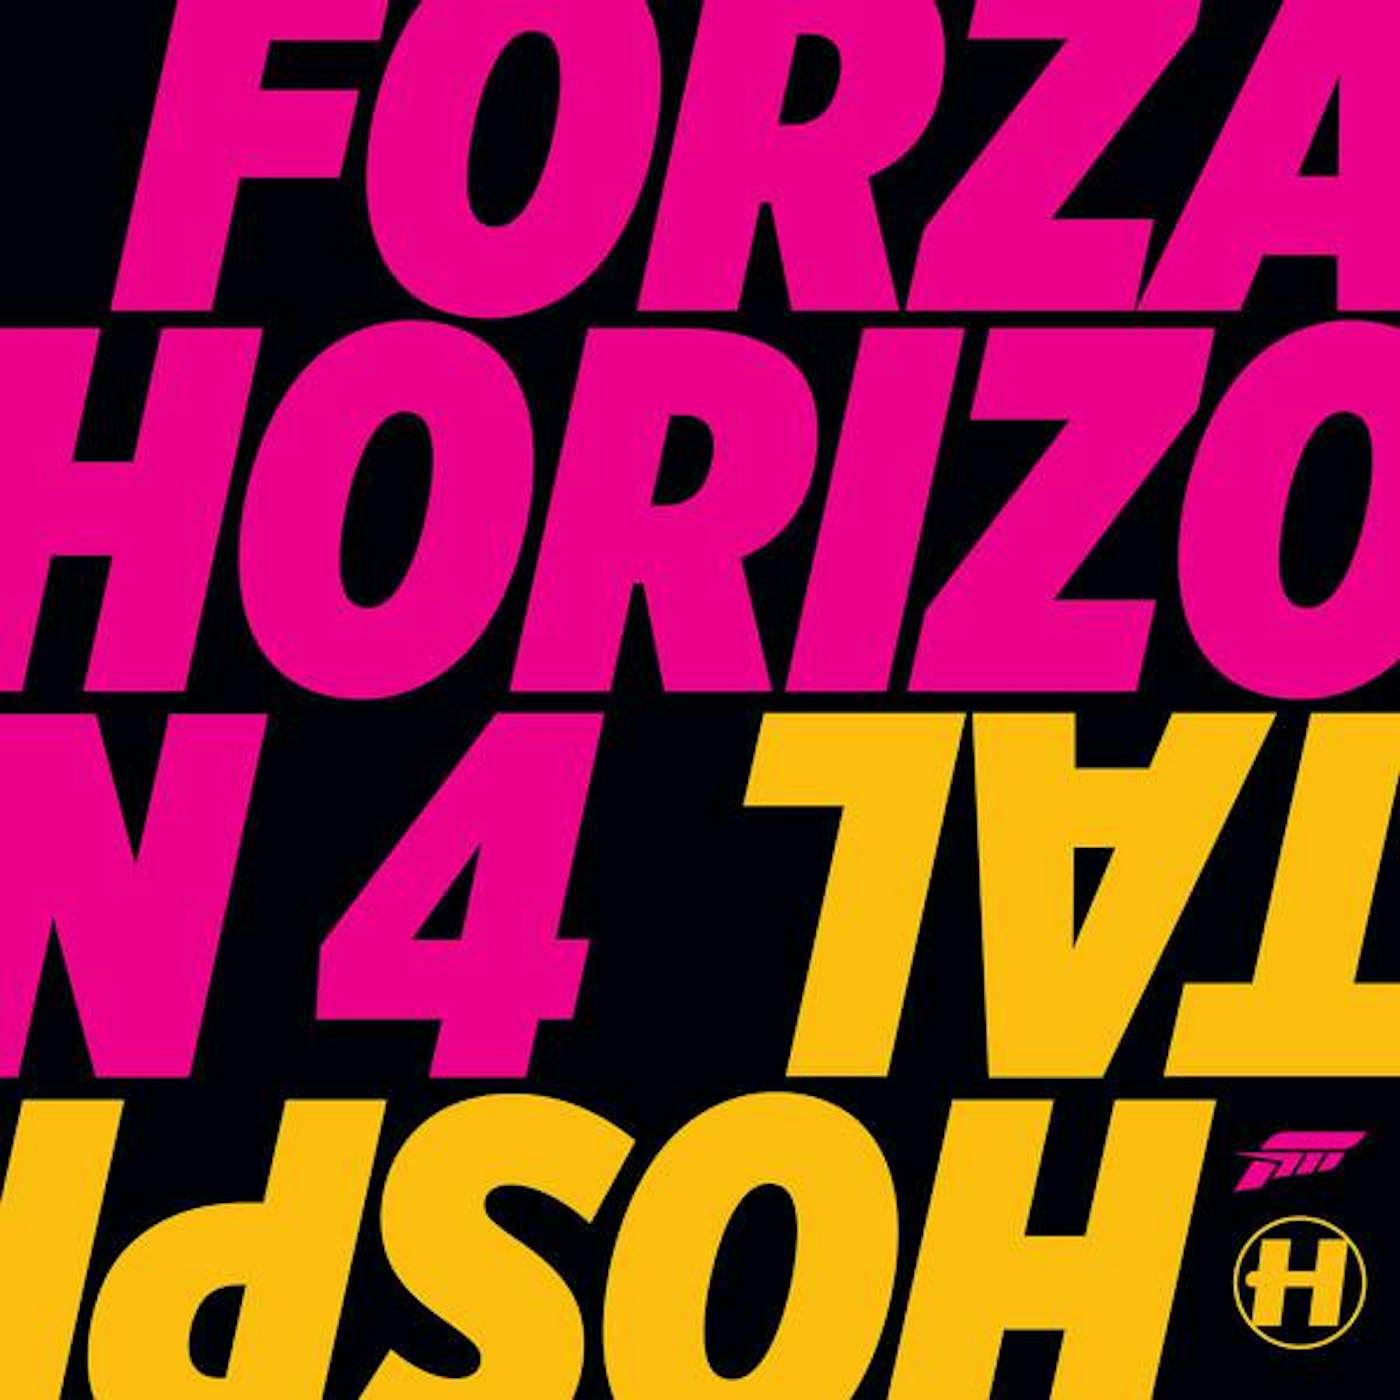 FORZA HORIZON 4 / O.S.T. Vinyl Record